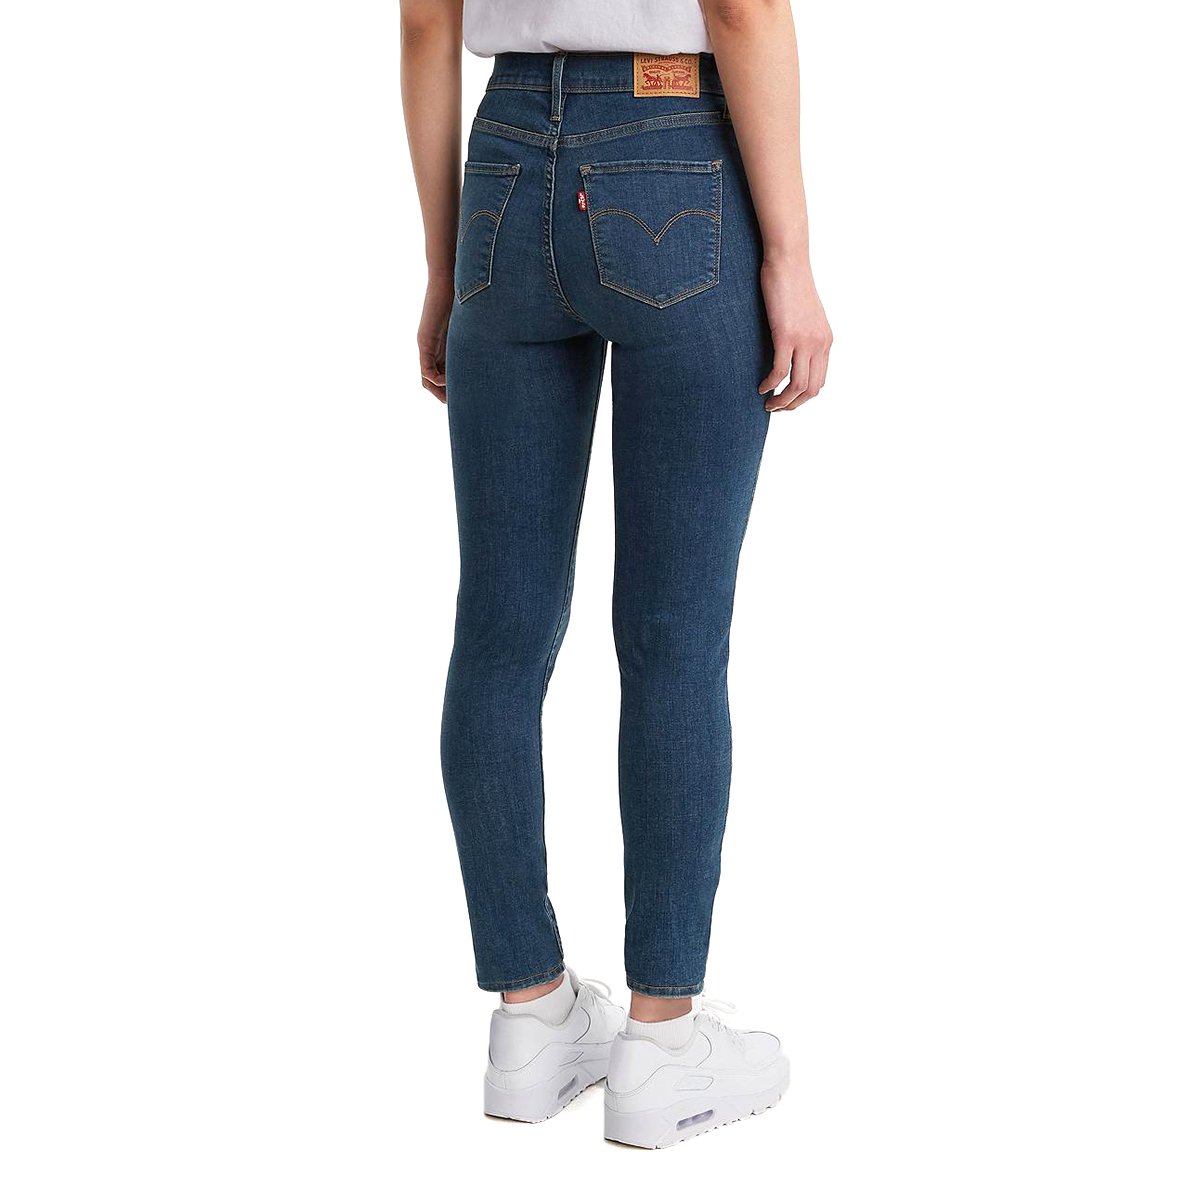 ÙÙ Ø¨Ø§ÙÙØ®Ø§Ø·Ø±Ø© ÙØ¯Ø¨ Ø¹ÙØ¯Ø© Jeans A La Cintura Mujer Findlocal Drivewayrepair Com